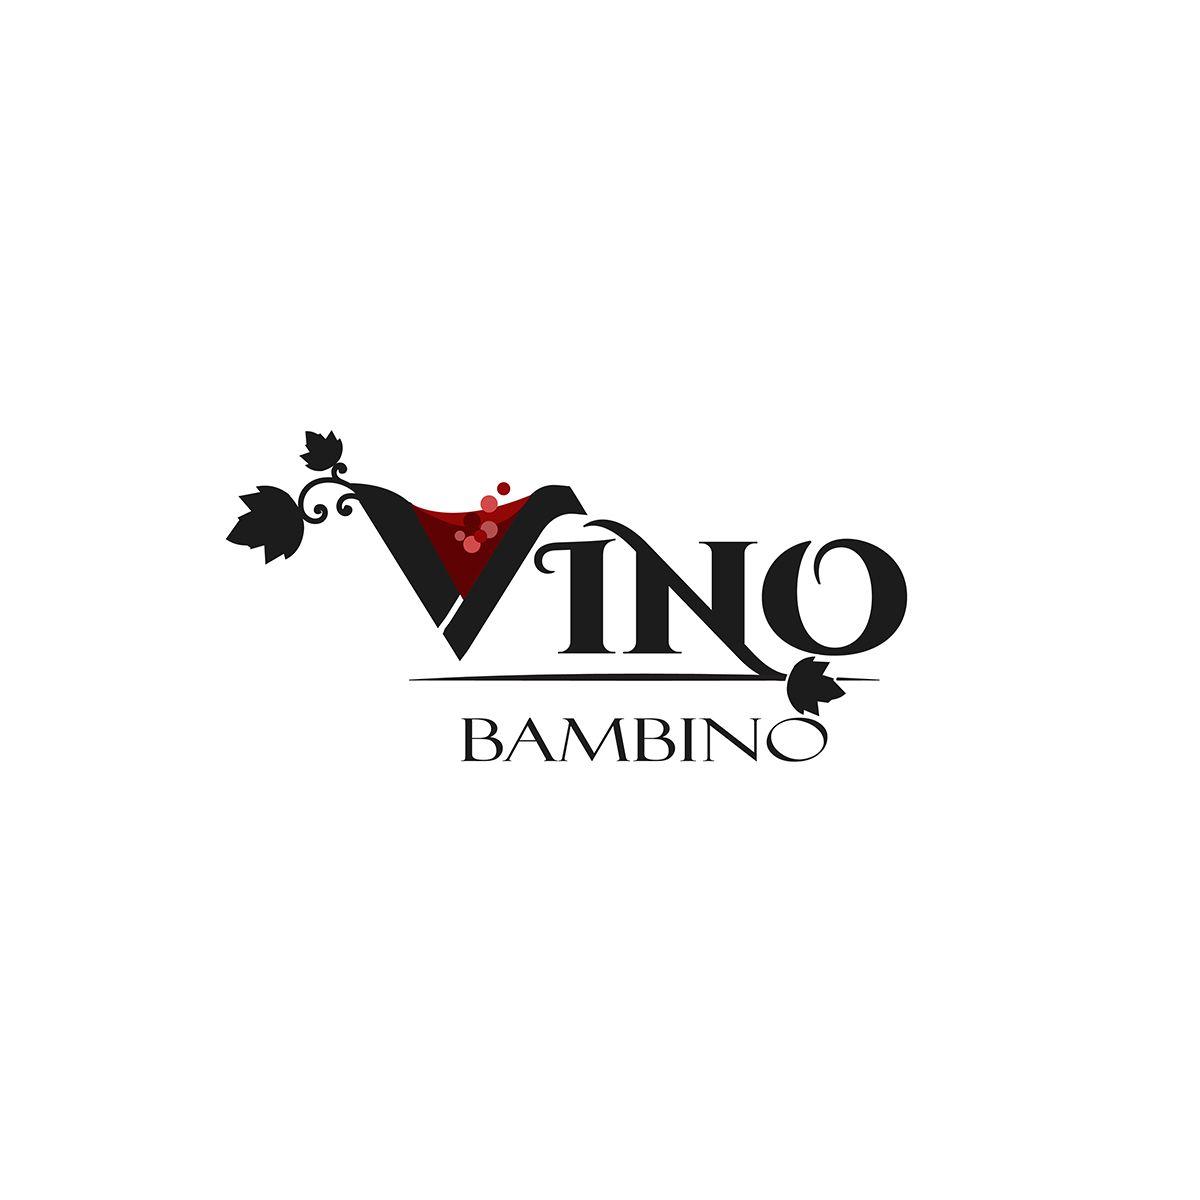 Wine Company Logo - Logo for a wine company